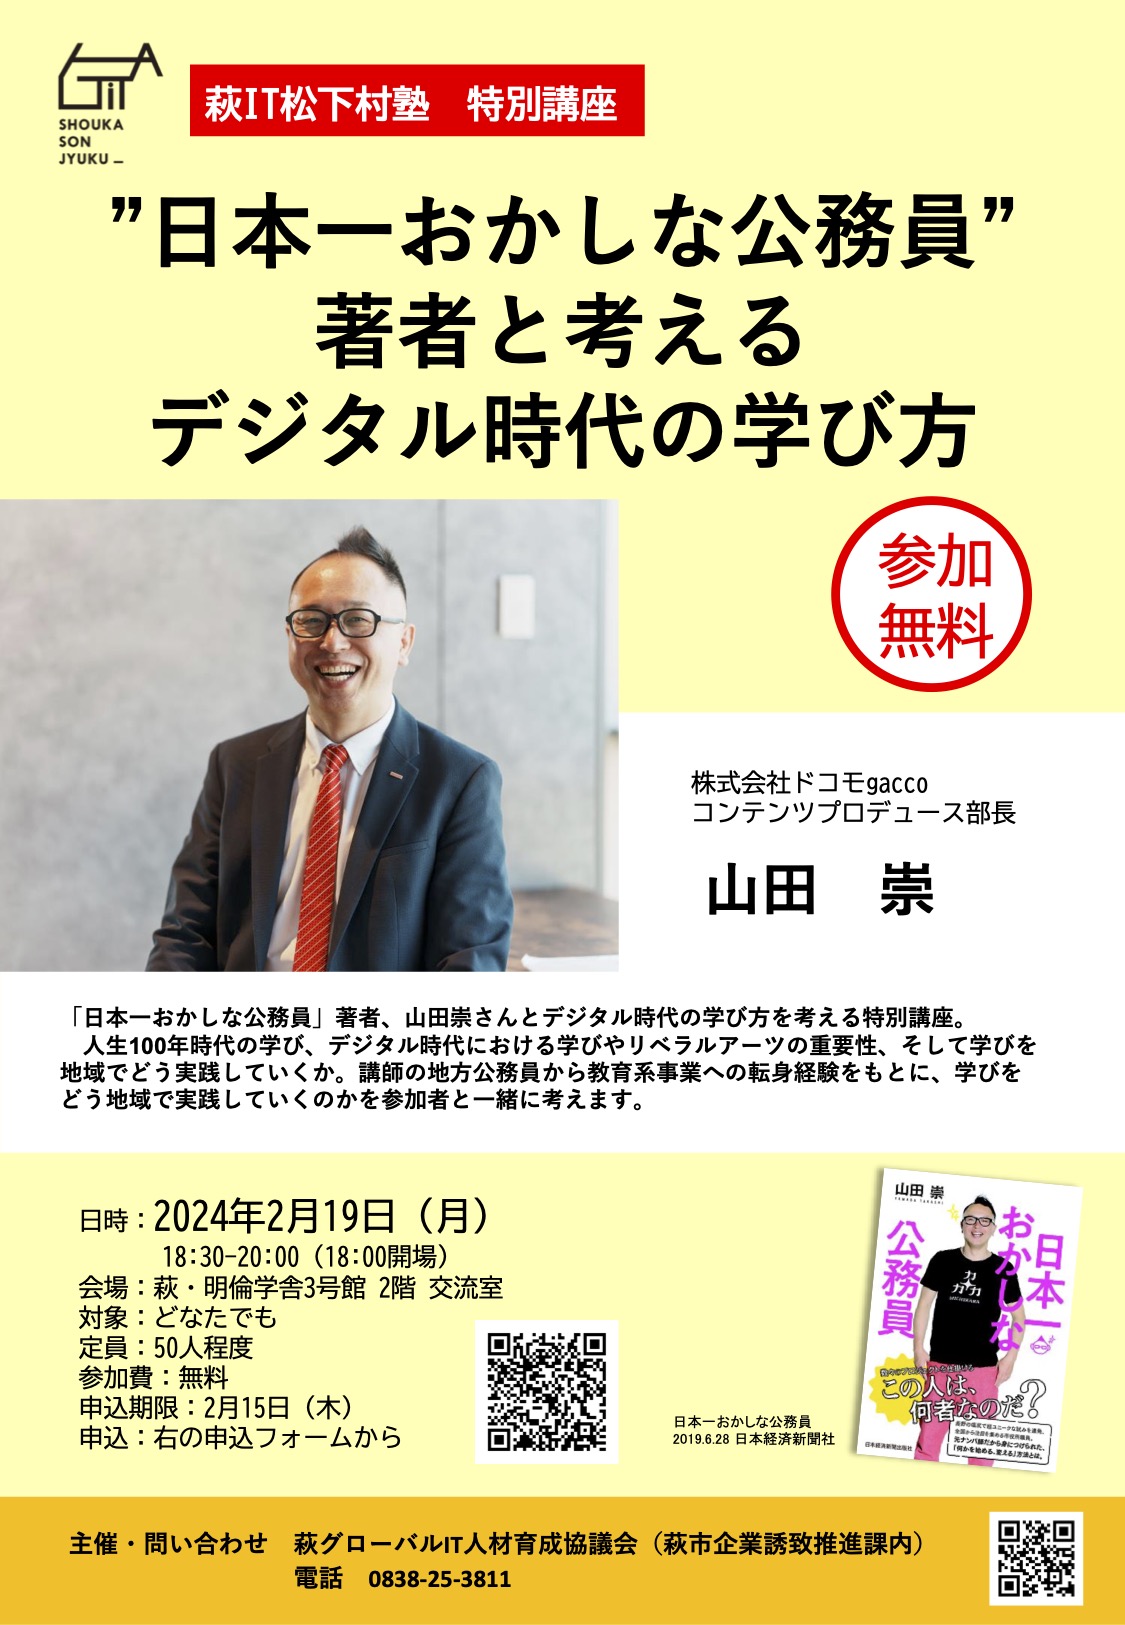 【2/19】萩IT松下村塾 特別講座「”日本一おかしな公務員”著者と考えるデジタル時代の学び方」